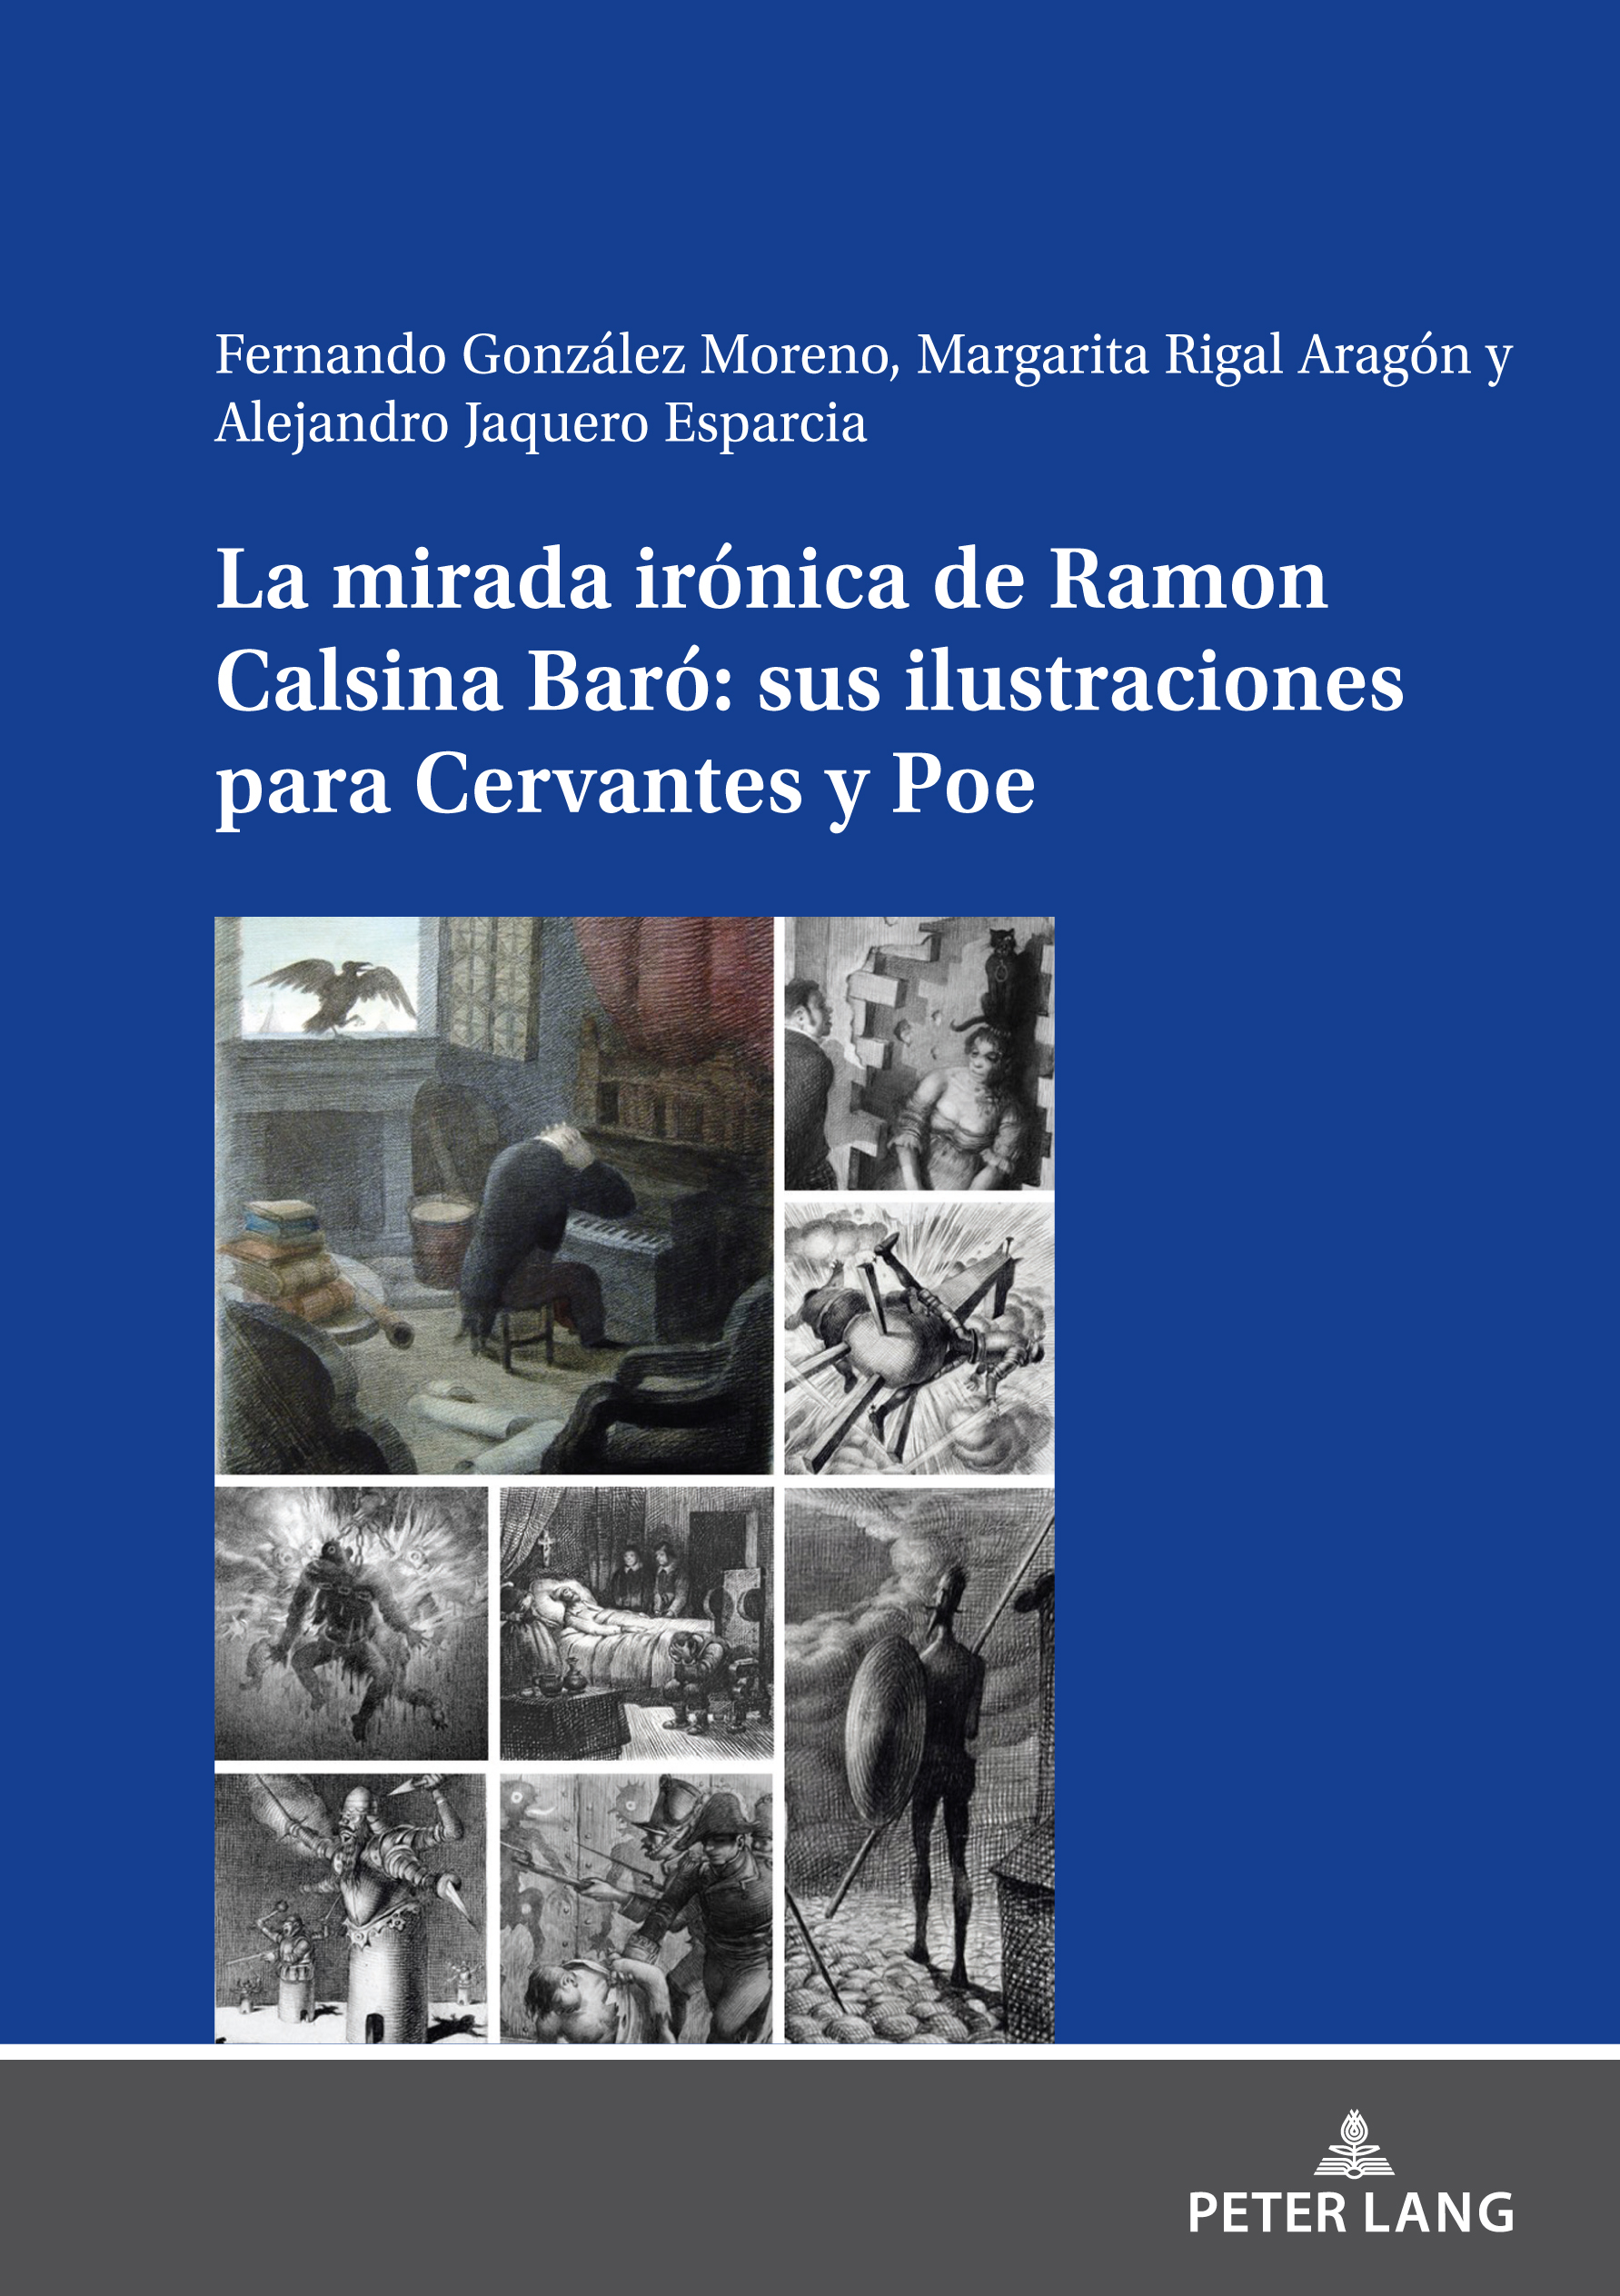 Imagen de portada del libro La mirada irónica de Ramon Calsina Baró